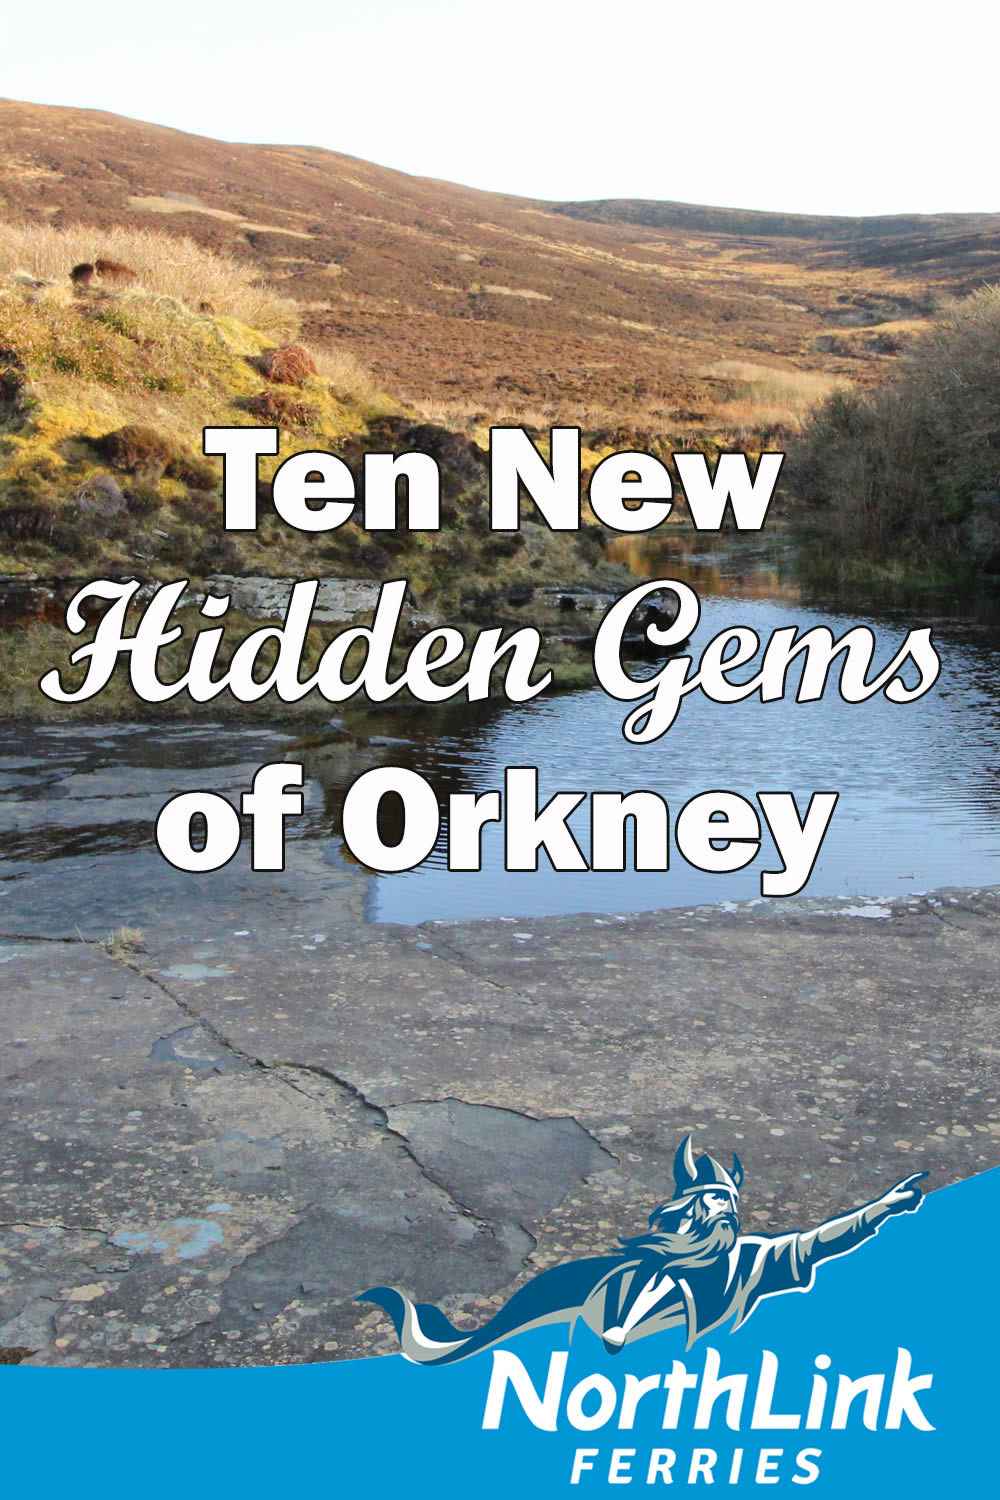 Ten New Hidden Gems of Orkney